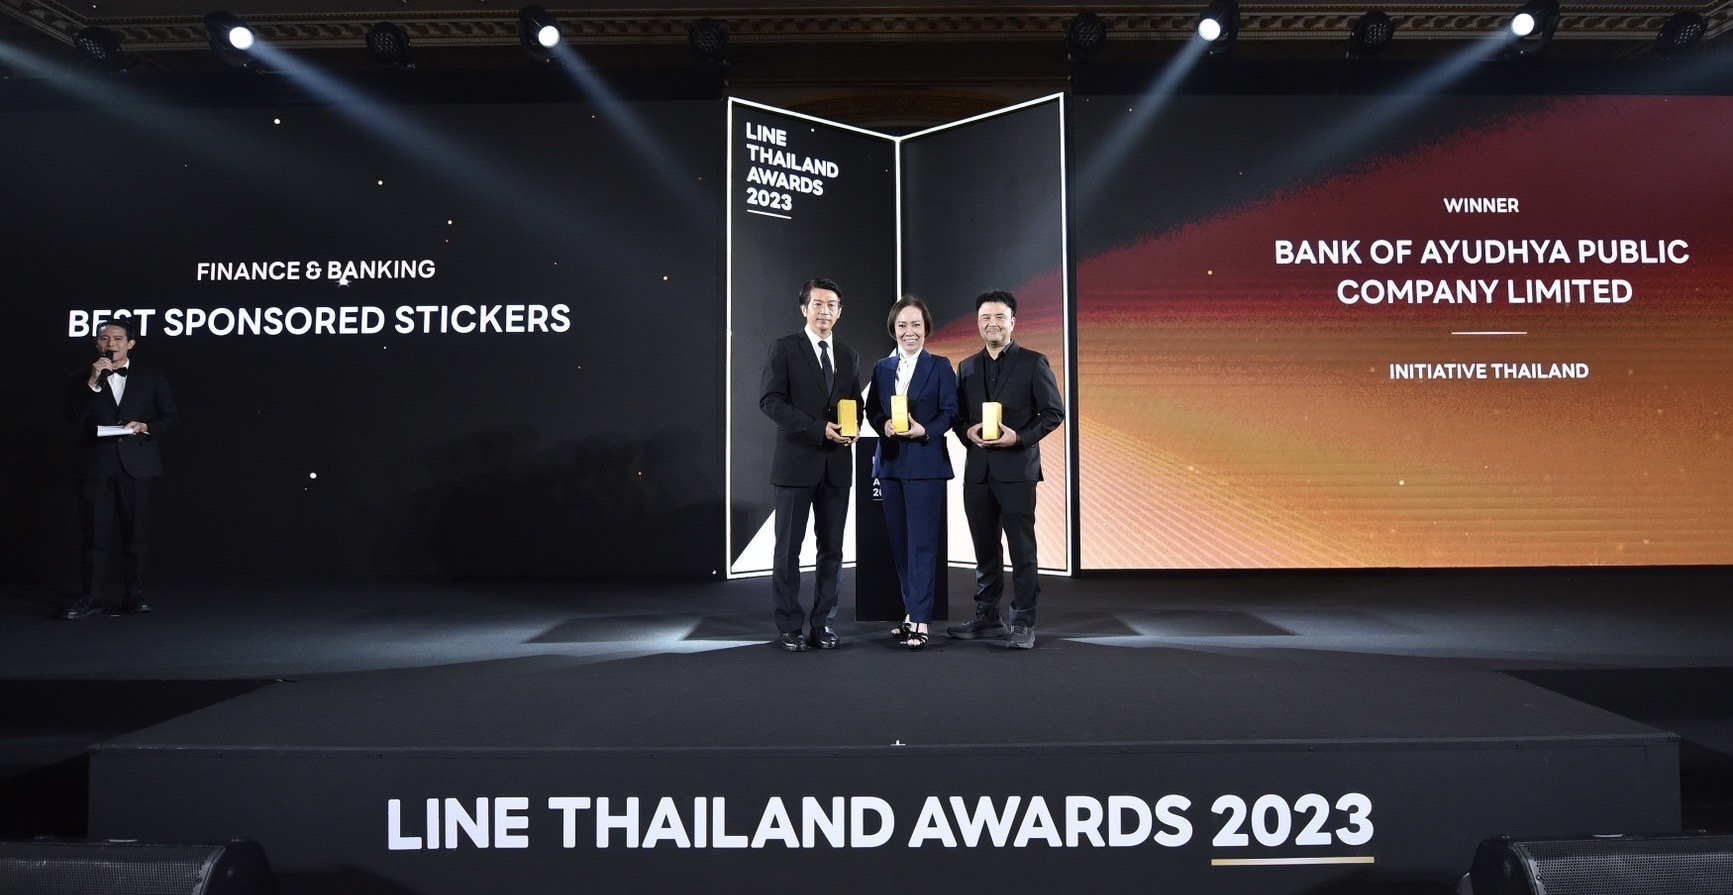 กรุงศรี คว้ารางวัล Best Sponsored Stickers in Finance & Banking จากงาน LINE THAILAND AWARDS 2023 ด้วยยอดดาวน์โหลดและยอดใช้งานสติกเกอร์สูงสุด